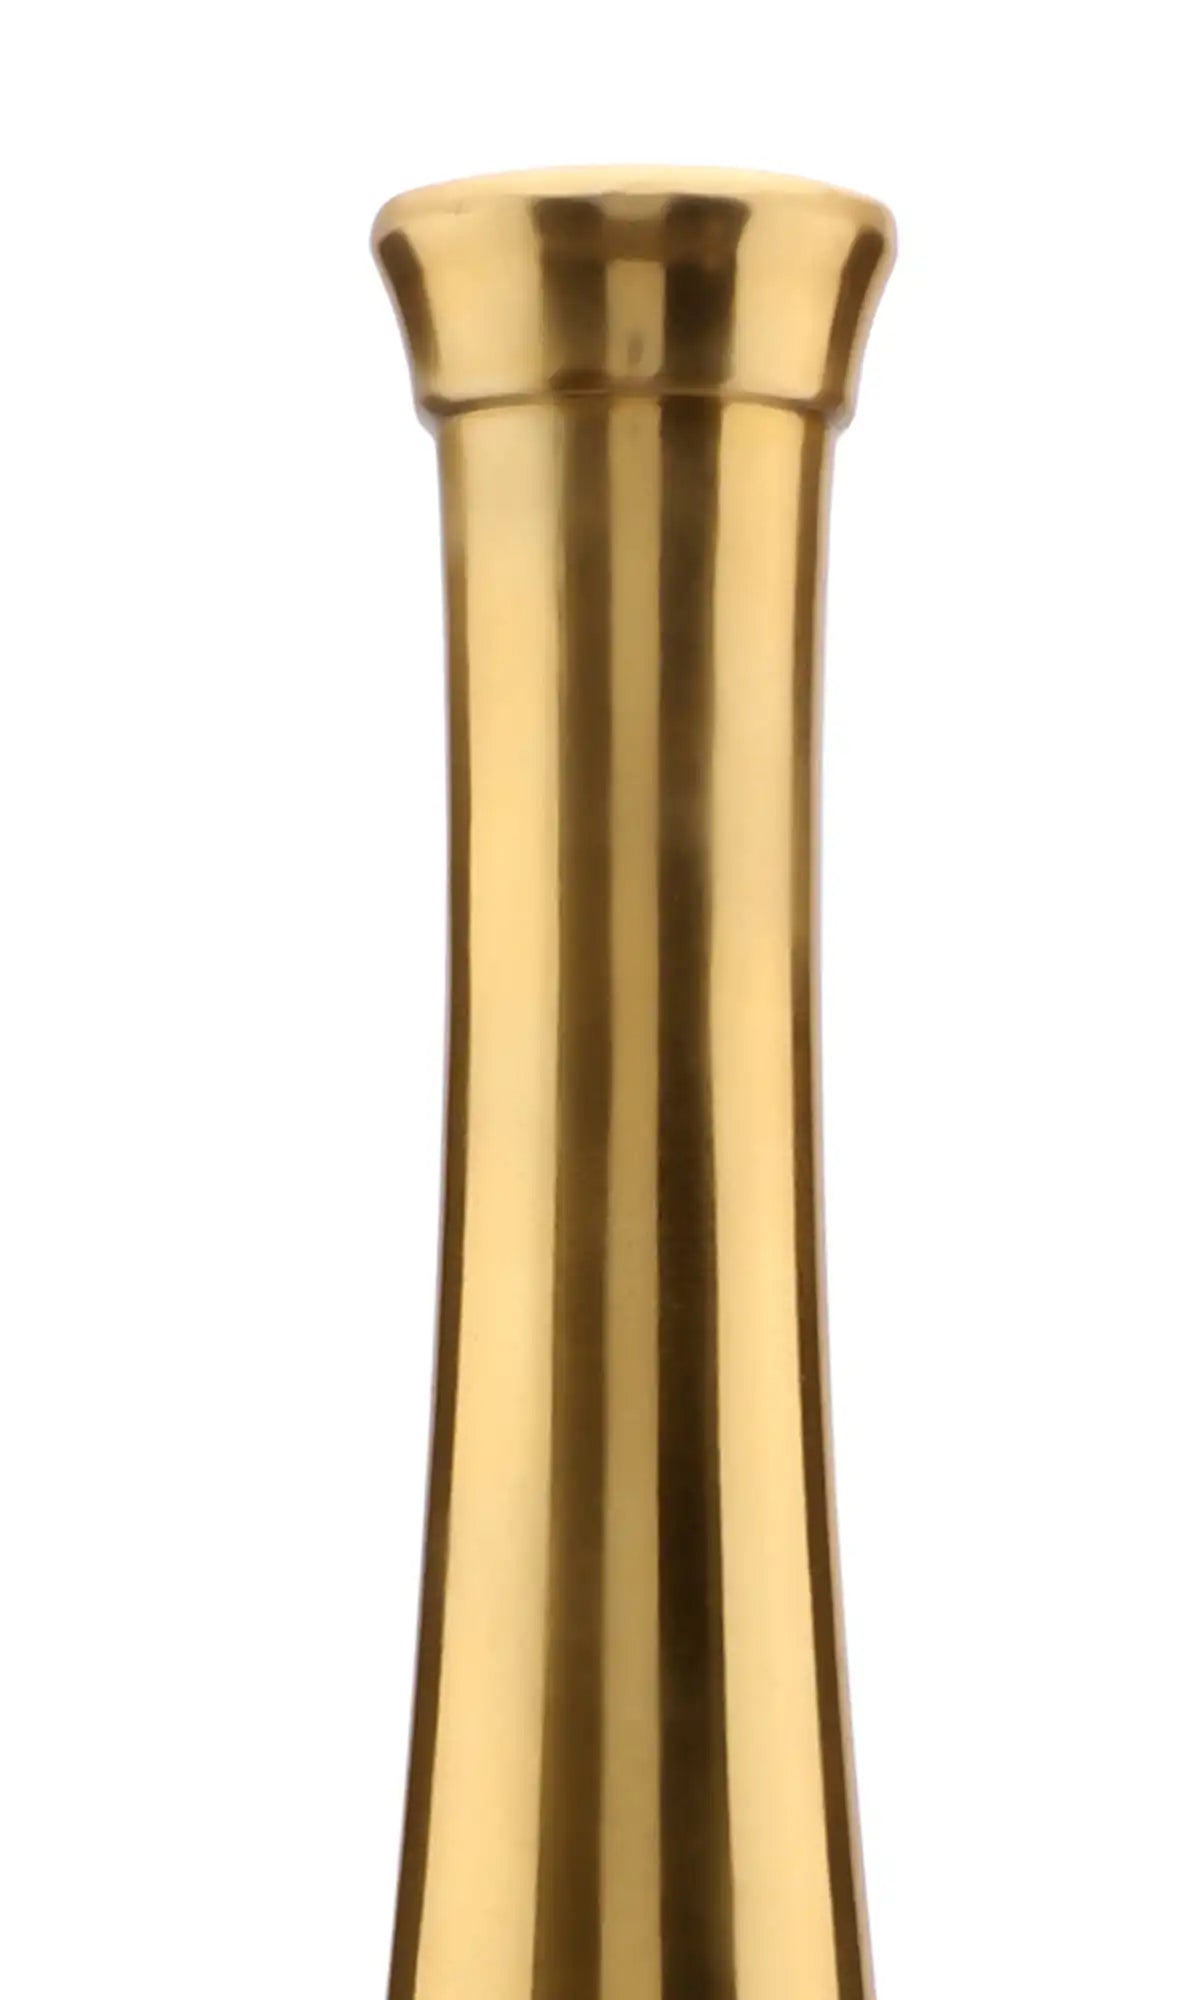 Scarlet Red Gold Champagne Bottle Vase Set 60-702-31-50-4